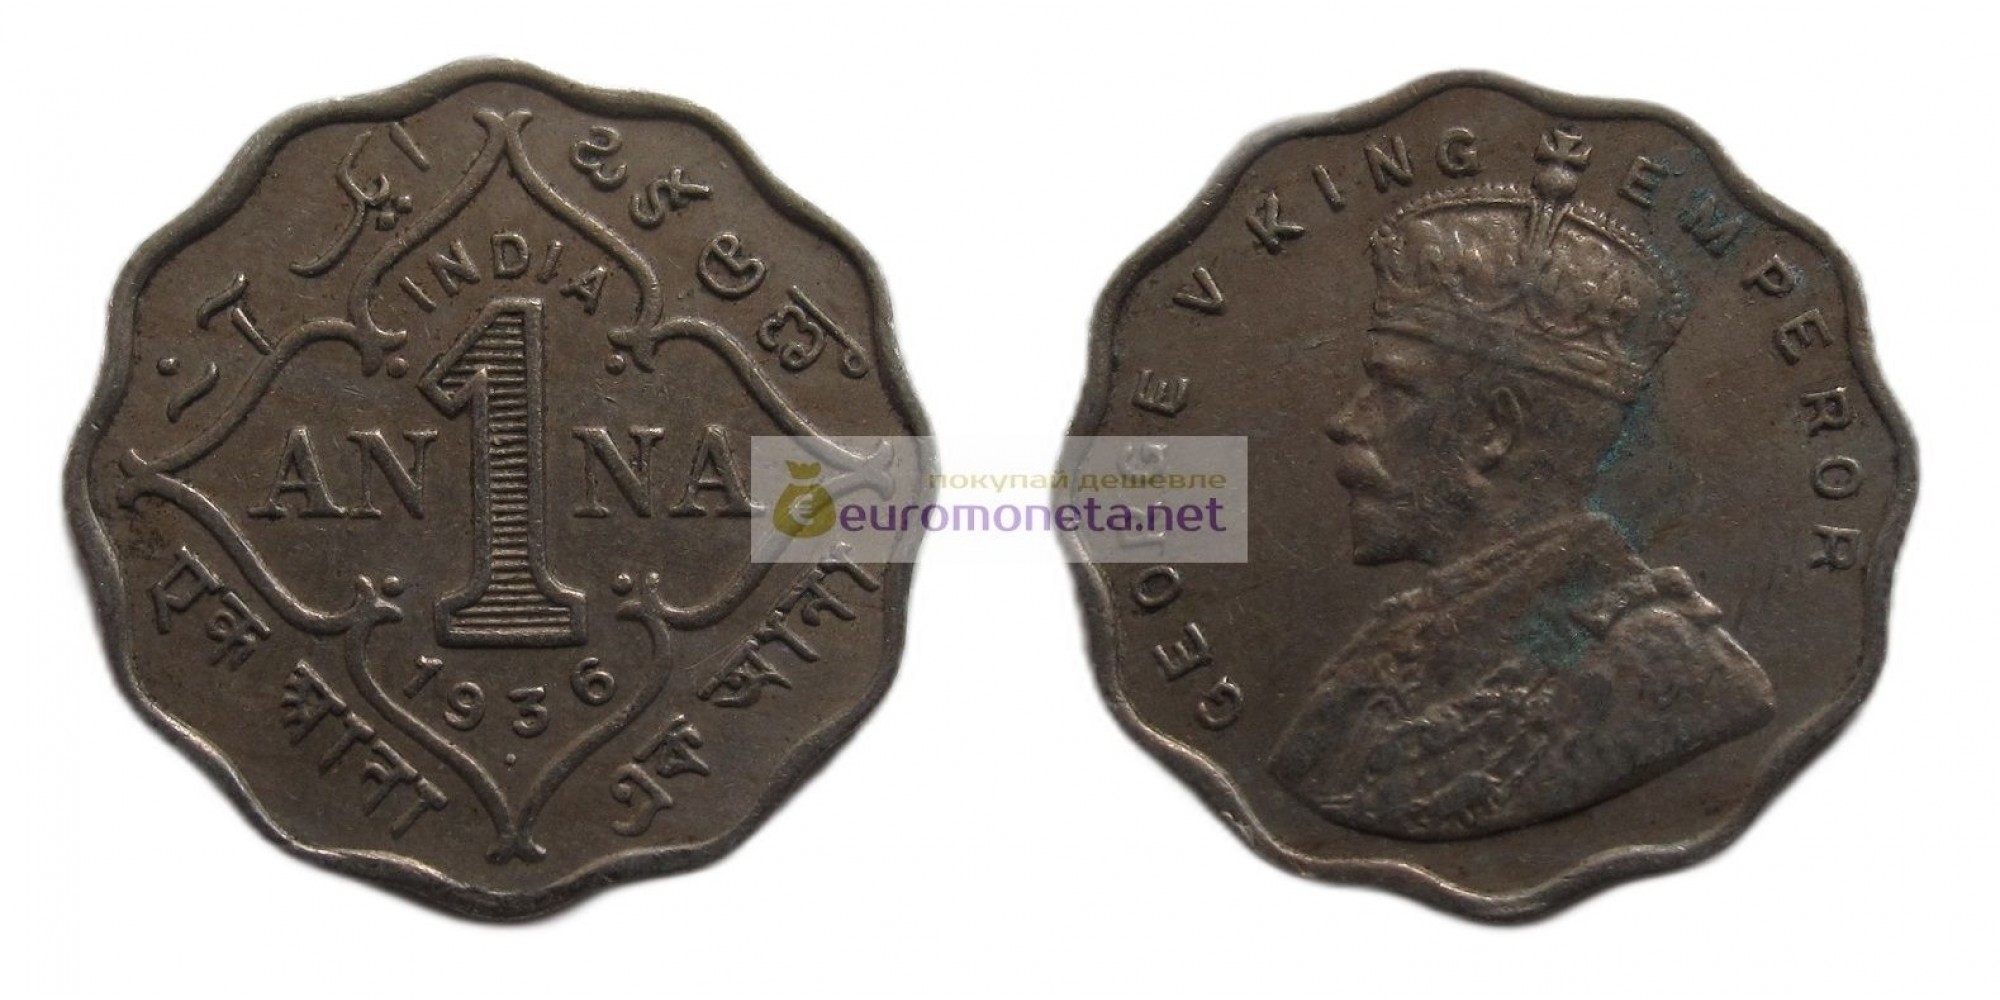 Индия - Британская 1 анна 1936 год. Отметка монетного двора: "•" - Бомбей. Король Георг V